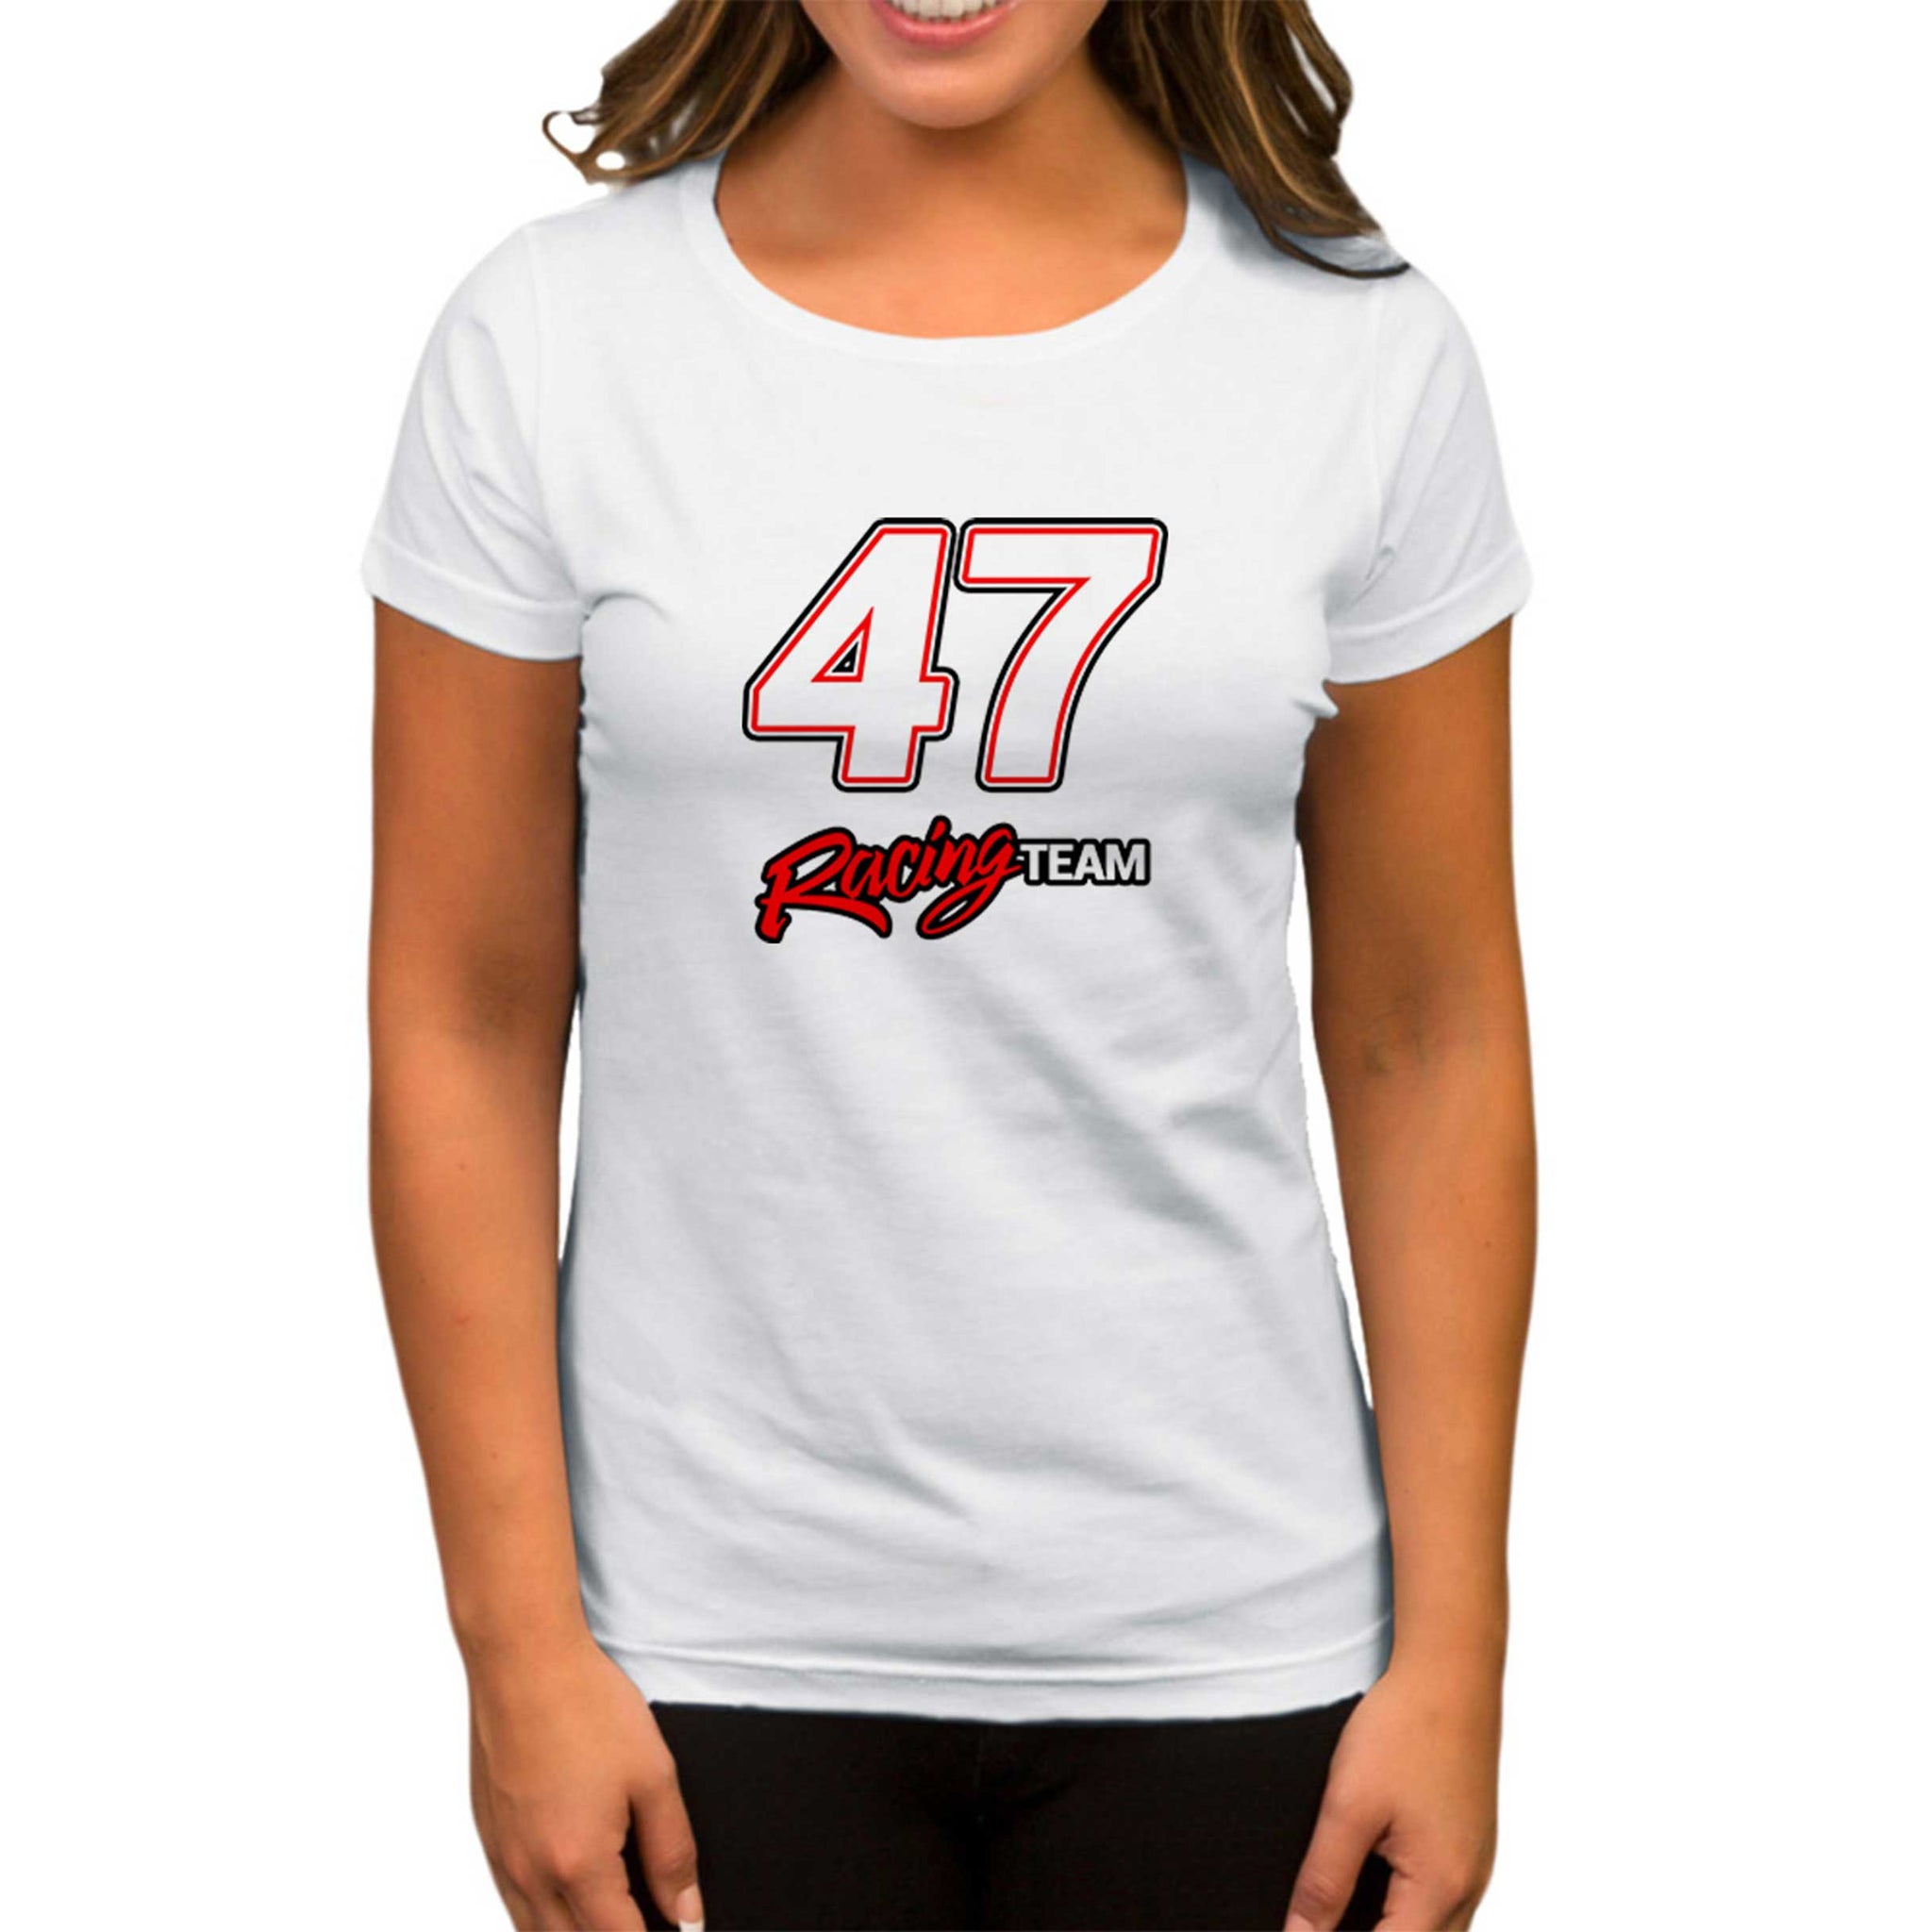 Moto 47 Racing Team Beyaz Kadın Tişört